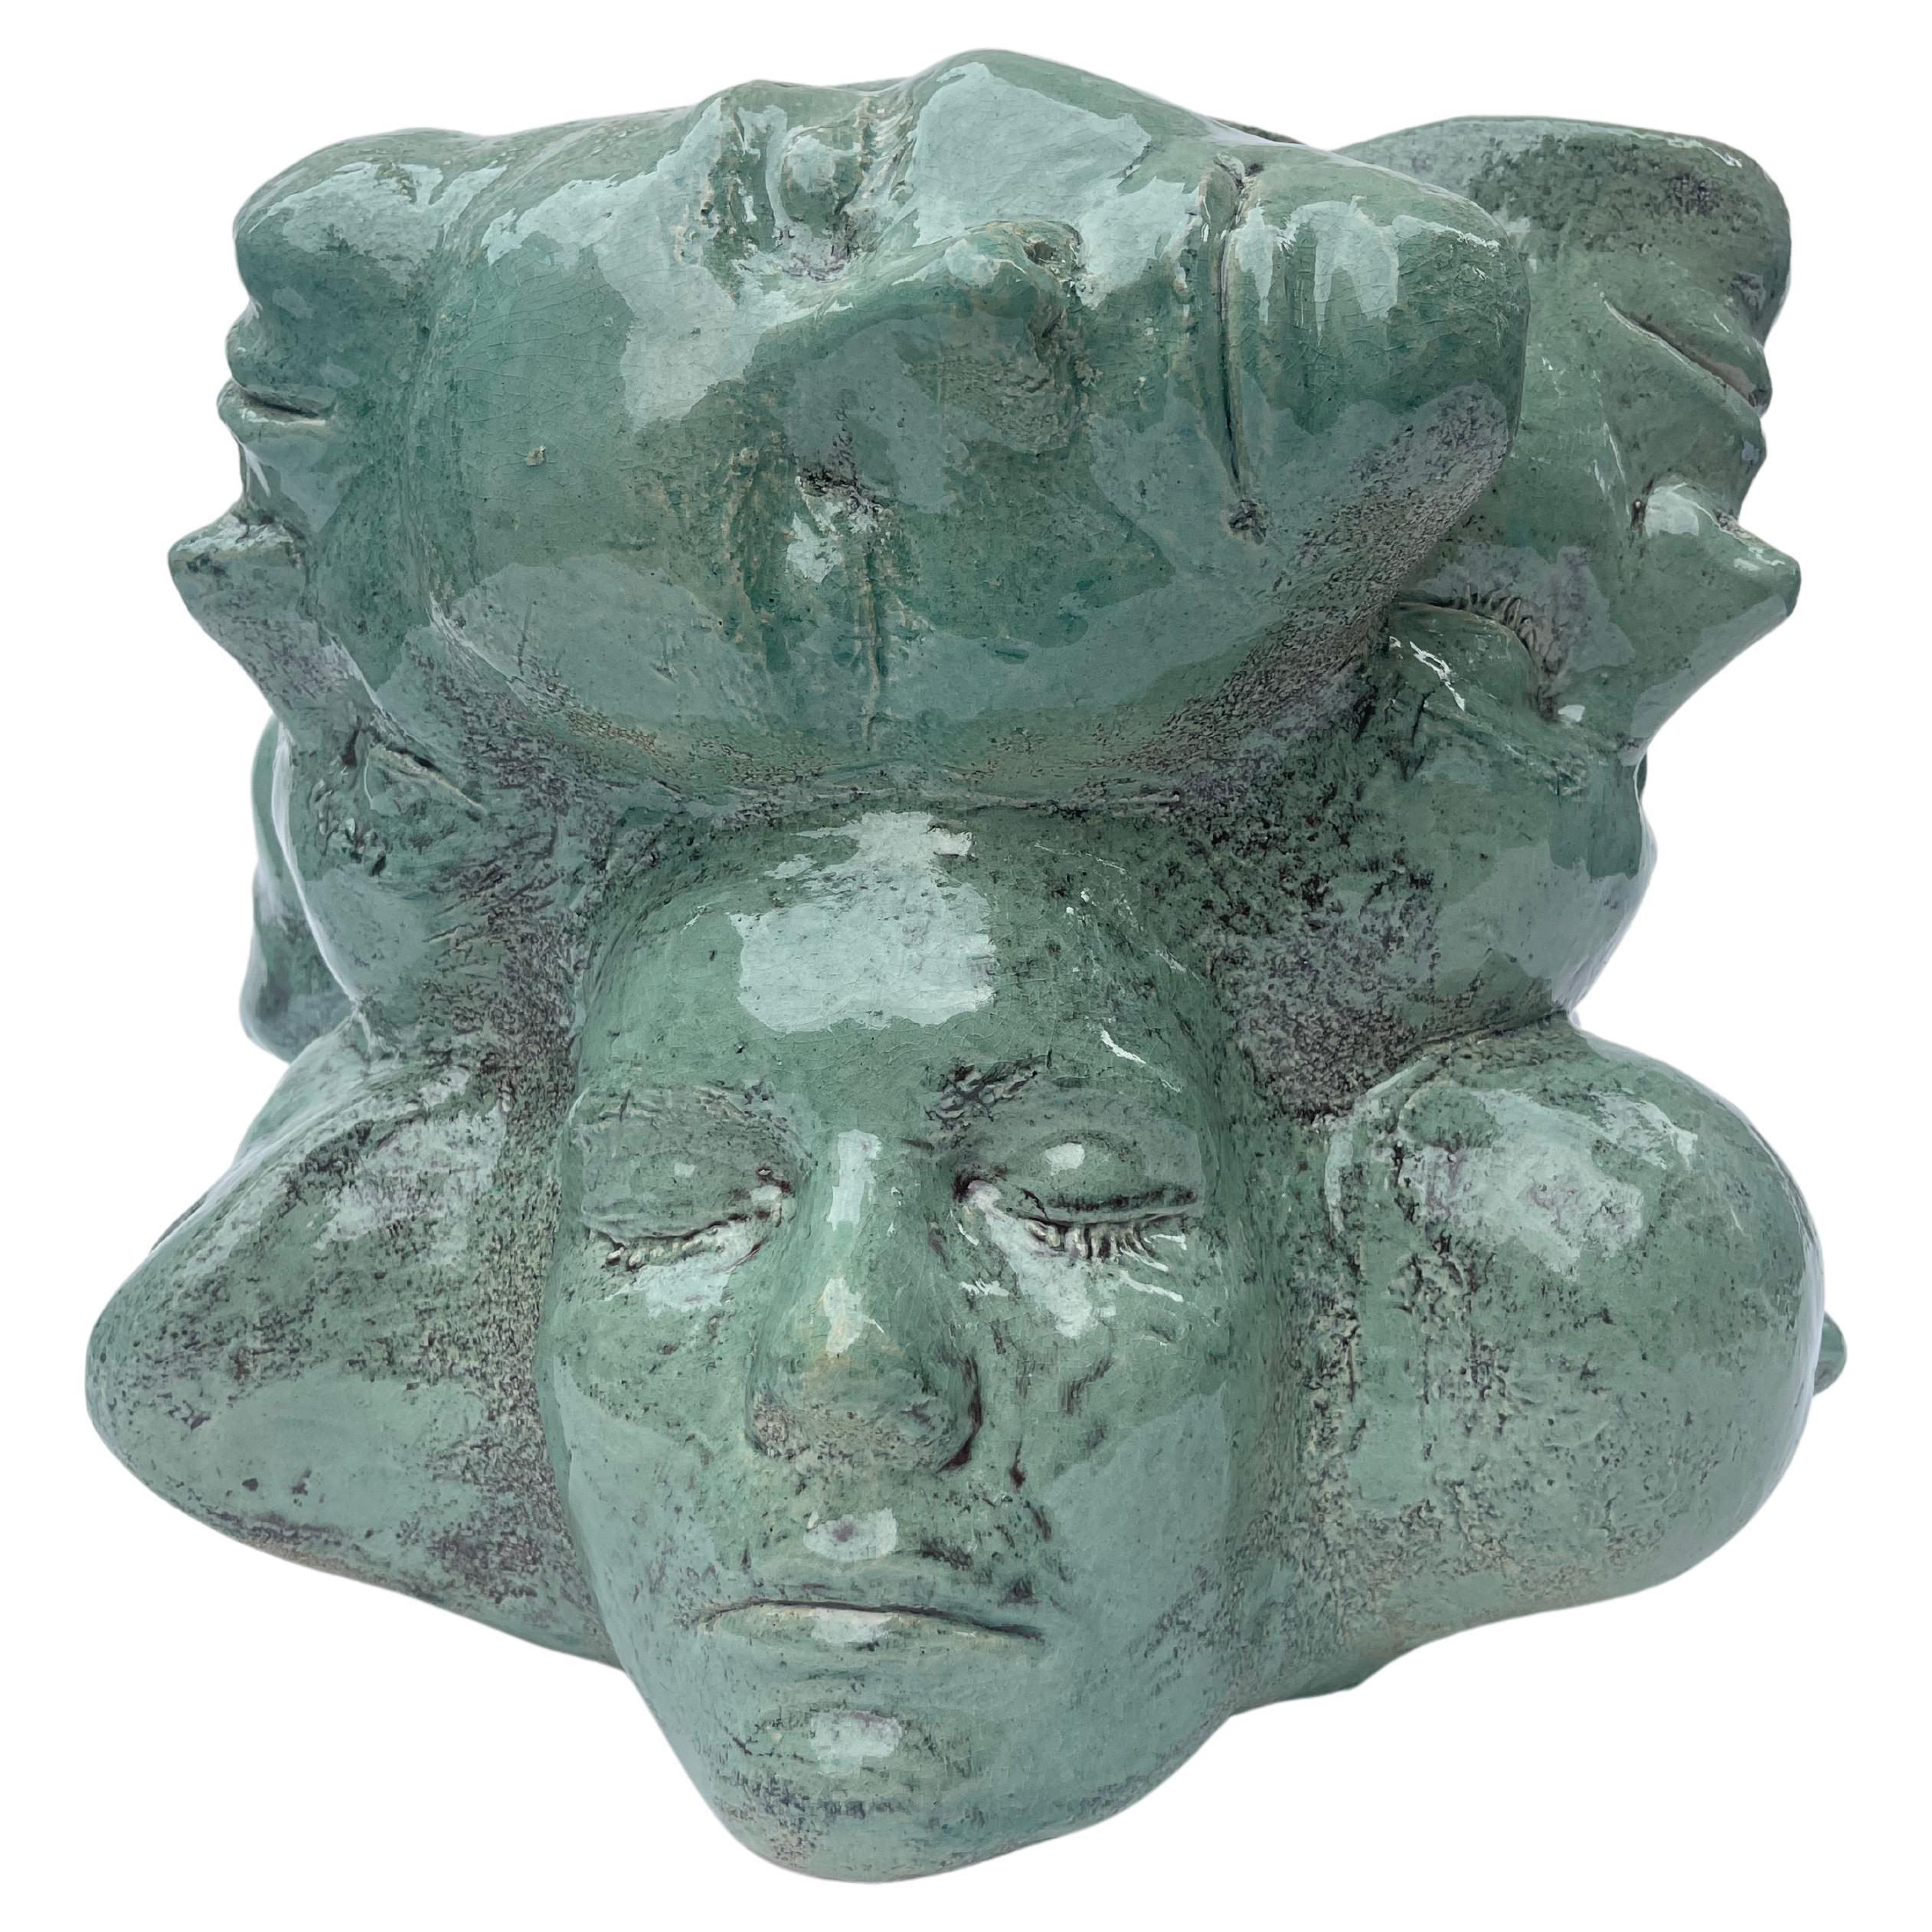 Handmade and unique ceramic vase – in turquoise